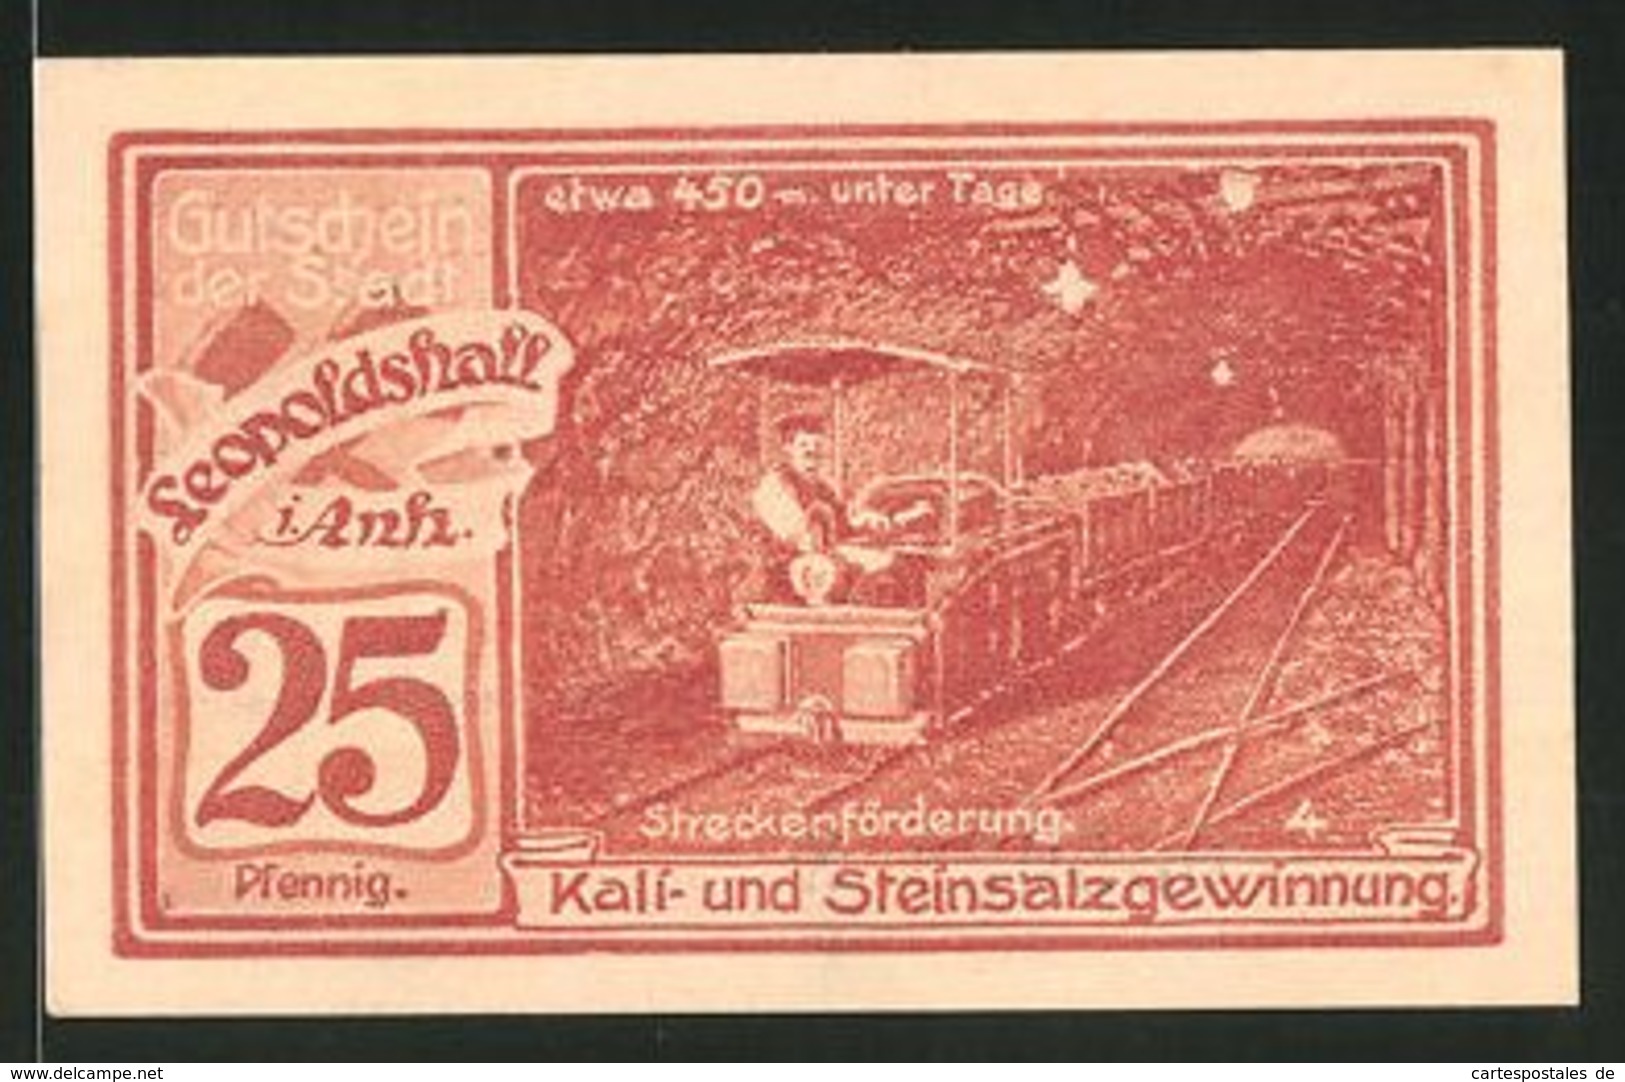 Billet De Nécessité Leopoldshall In Anhalt 1921, 50 Pfennig, Stadtwappen Et Bergmänner, Streckenförderung - [11] Emissions Locales